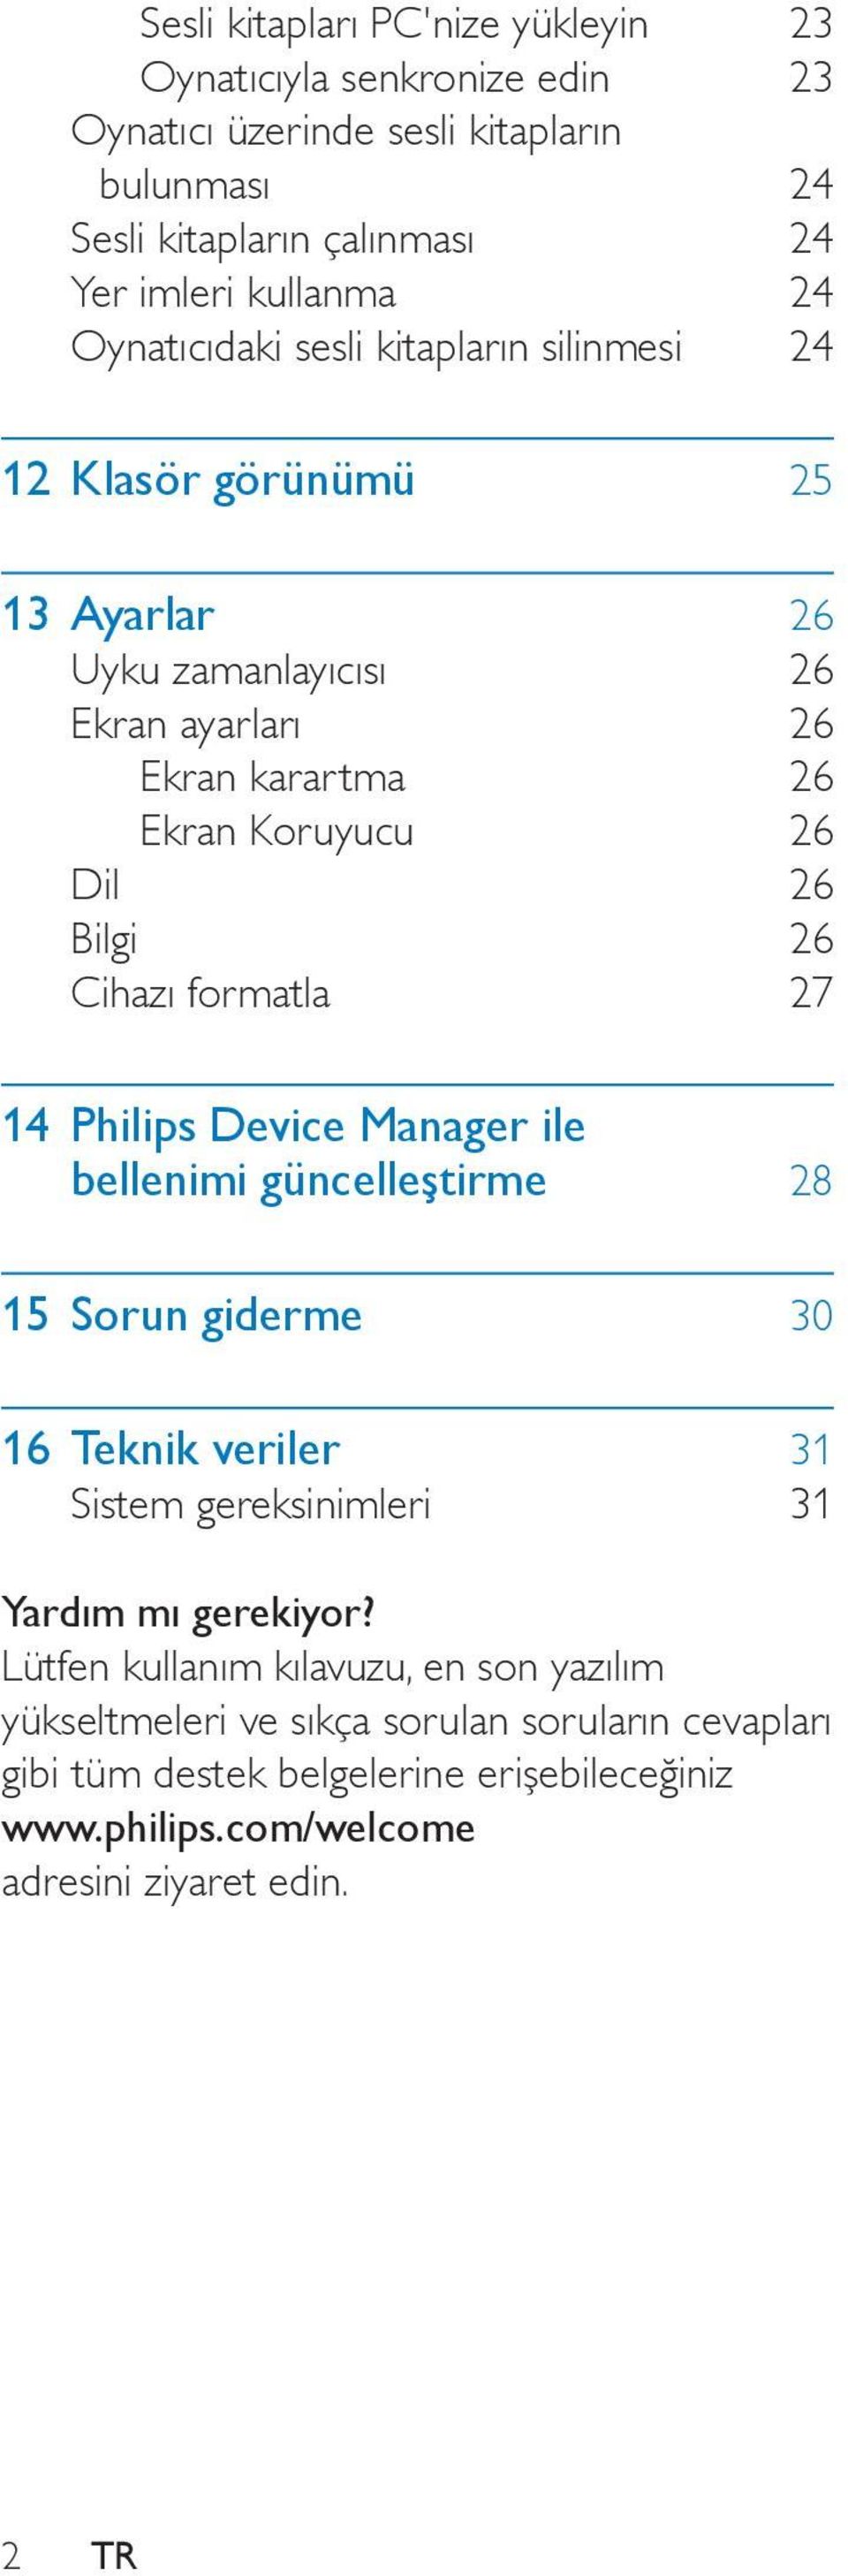 Cihazı formatla 27 14 Philips Device Manager ile bellenimi güncelleştirme 28 15 Sorun giderme 30 16 Teknik veriler 31 Sistem gereksinimleri 31 Yardım mı gerekiyor?